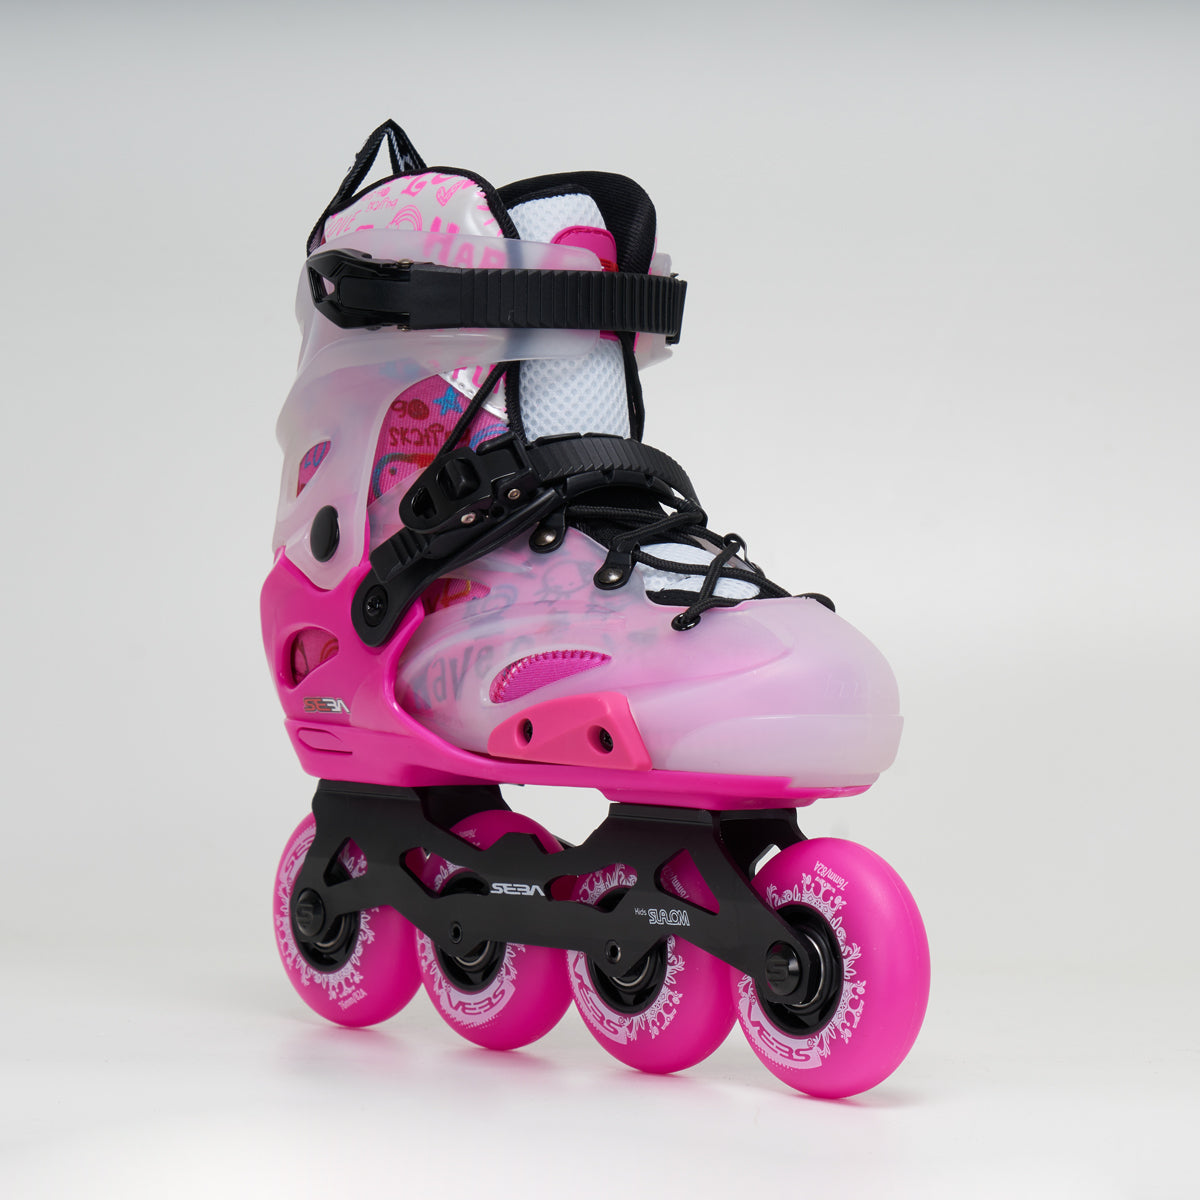 Seba ST MX Junior Adjustable Skates - Pink